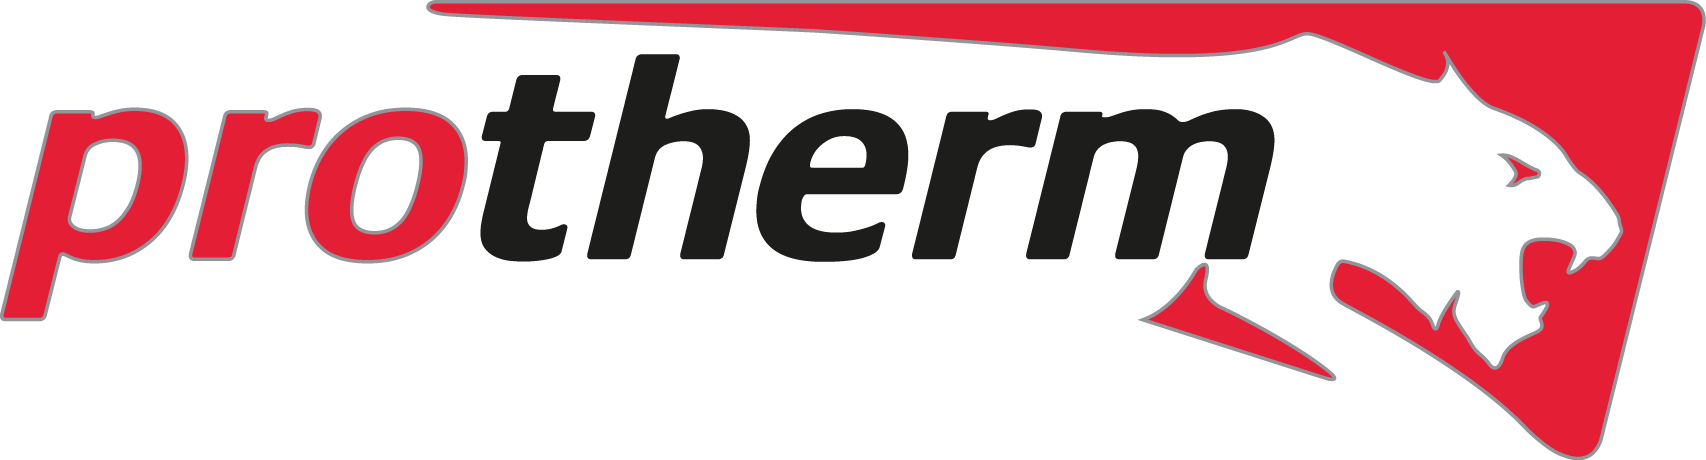 protherm logo 1